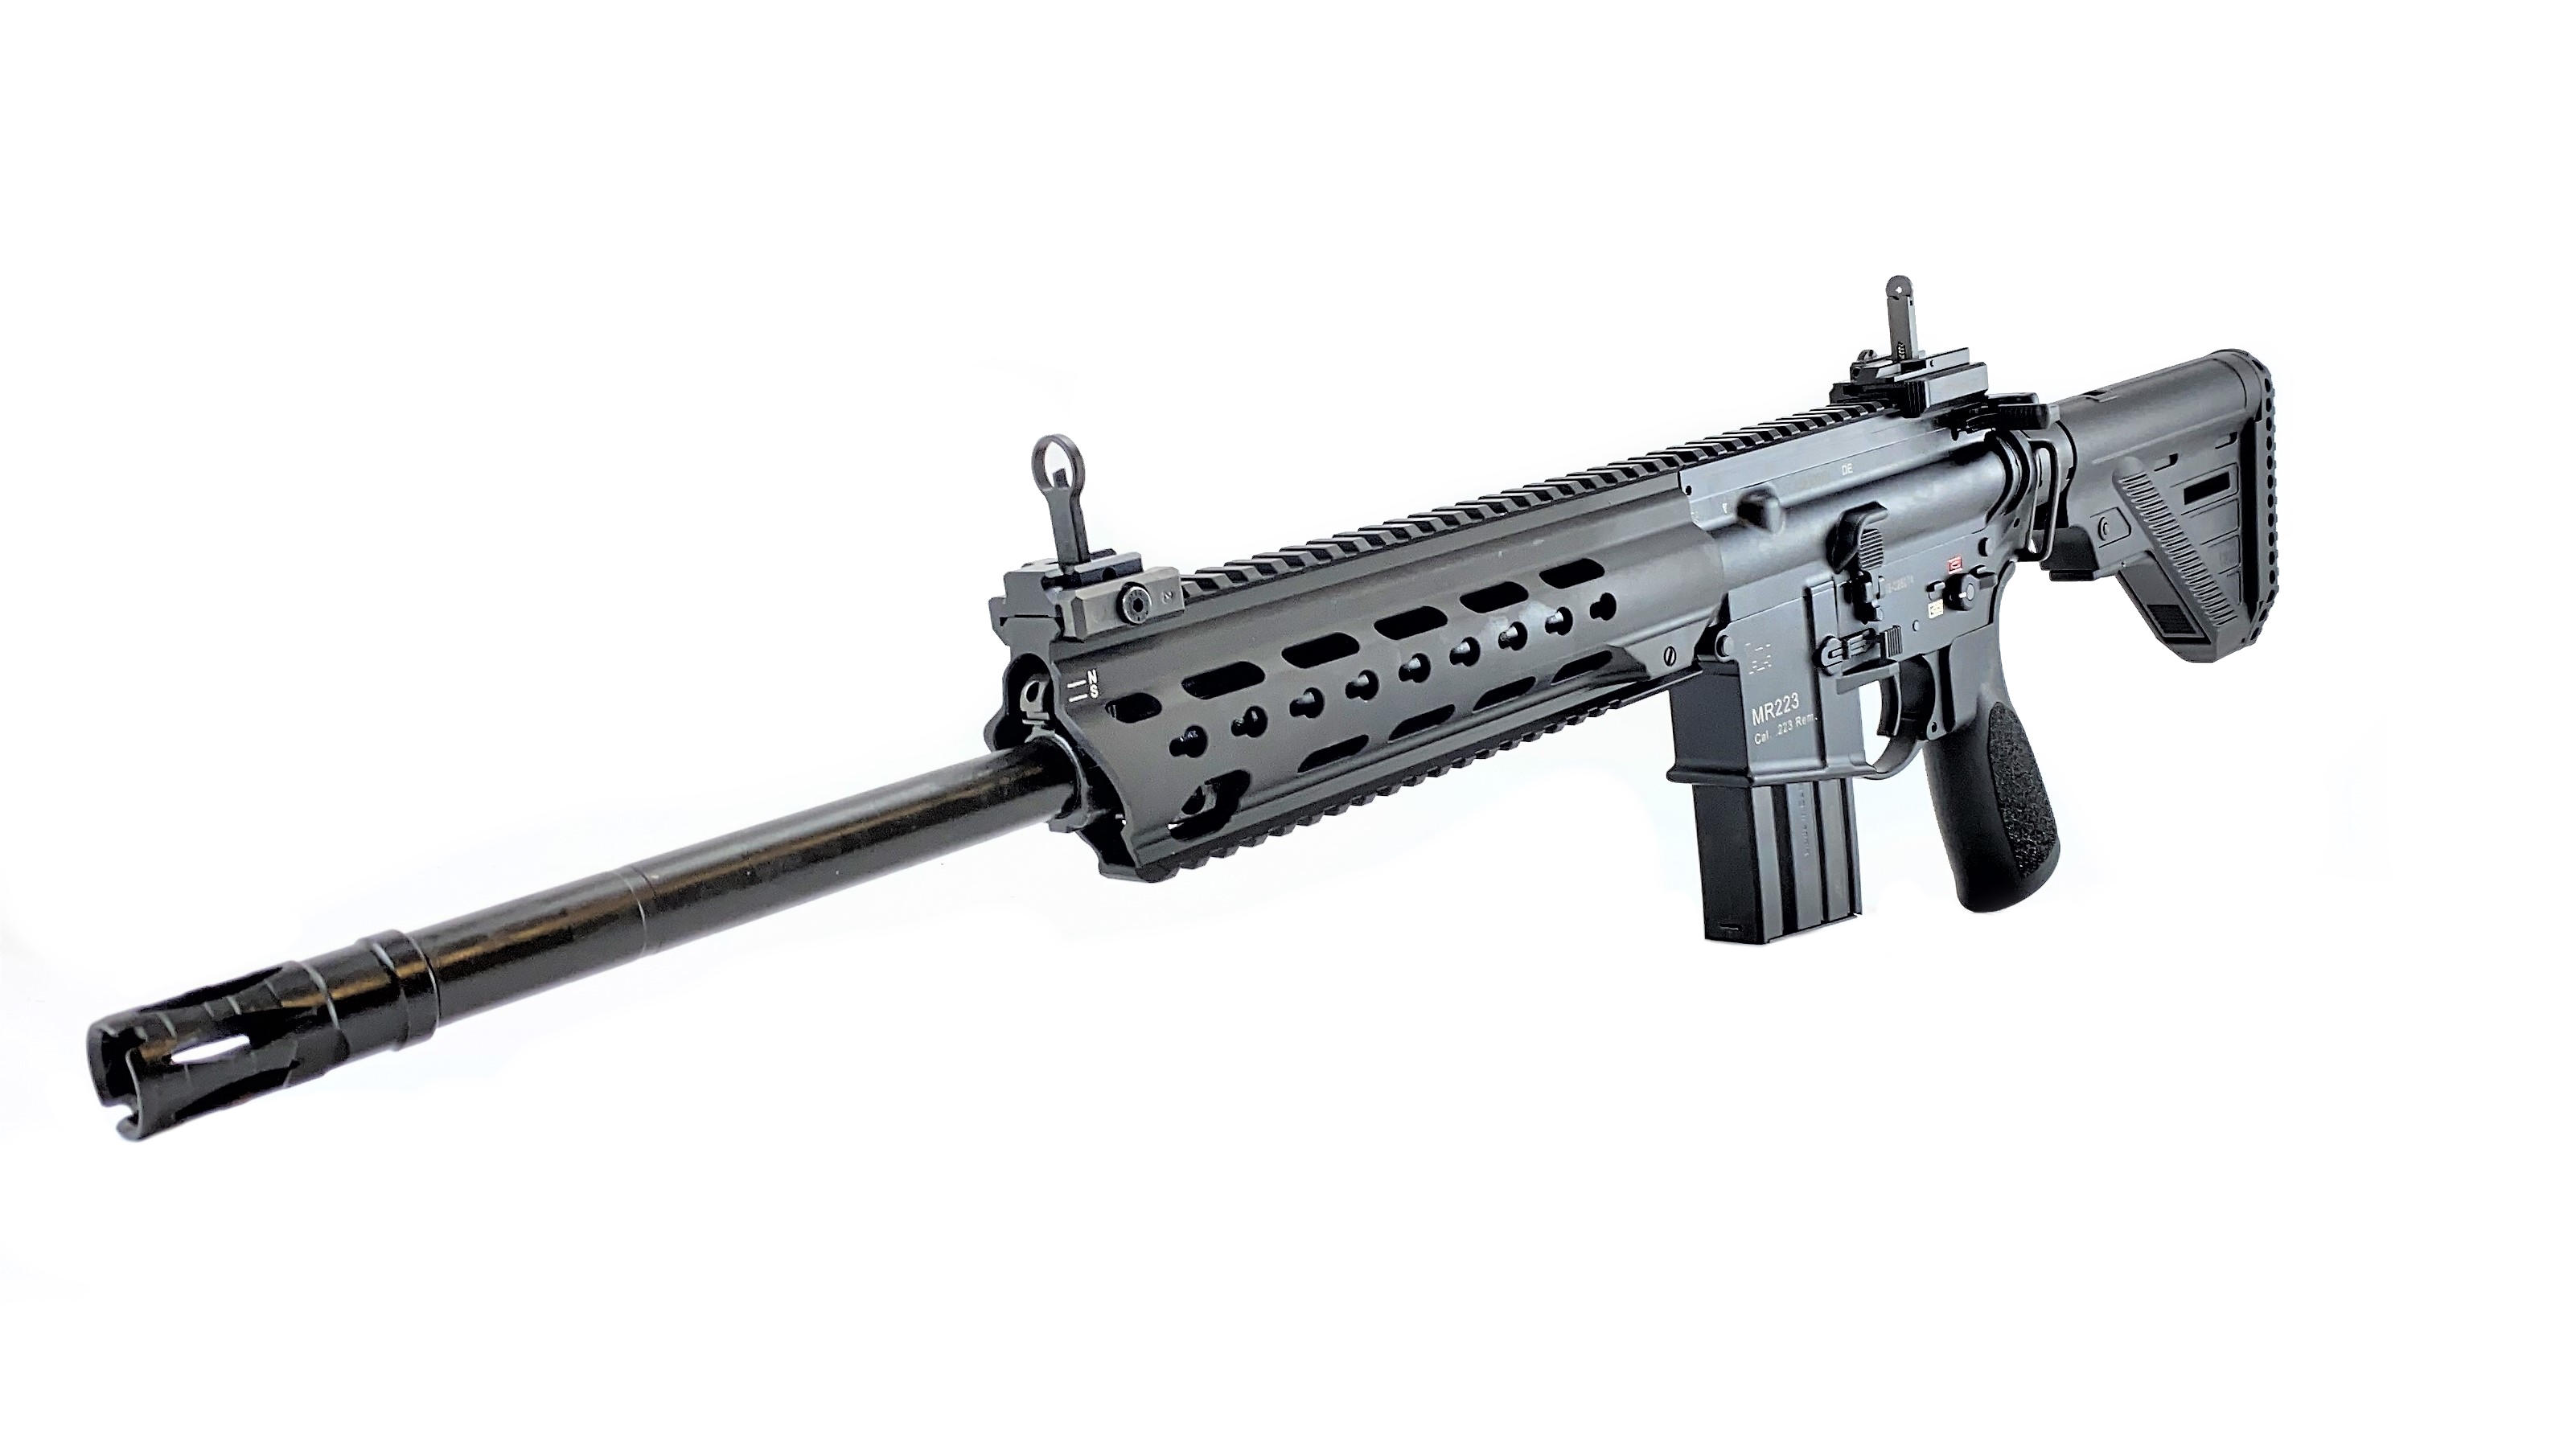 HK MR223 zivile Version des HK416 | F.A.S.T. Onlineshop